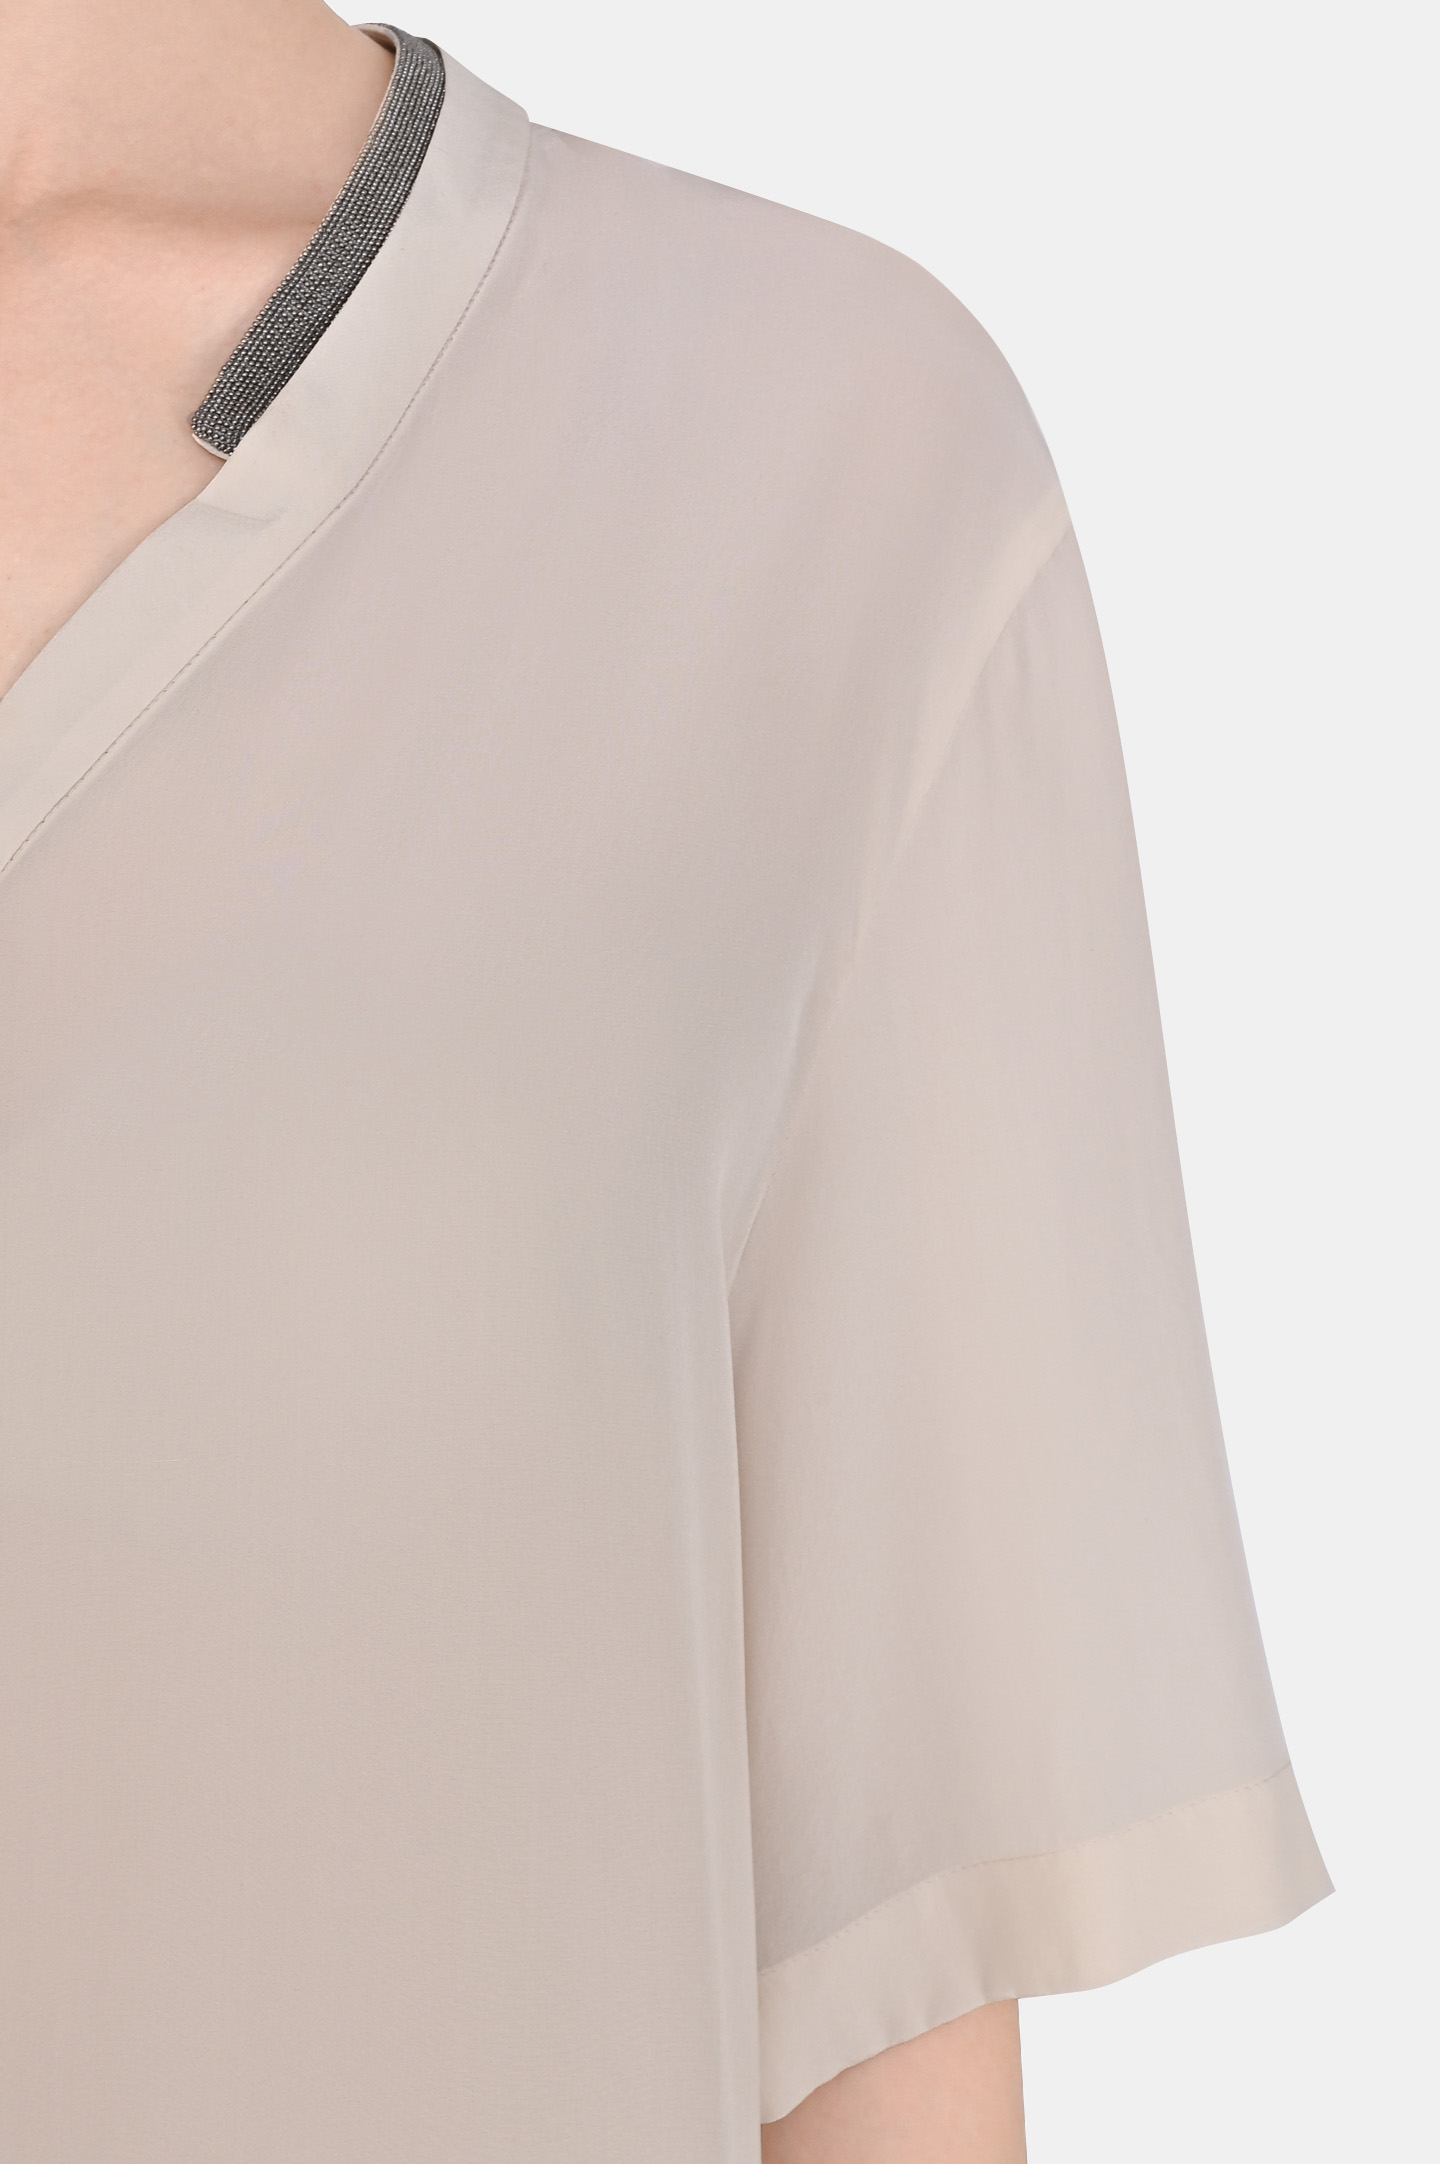 Блуза BRUNELLO  CUCINELLI MP992DP102, цвет: Молочный, Женский